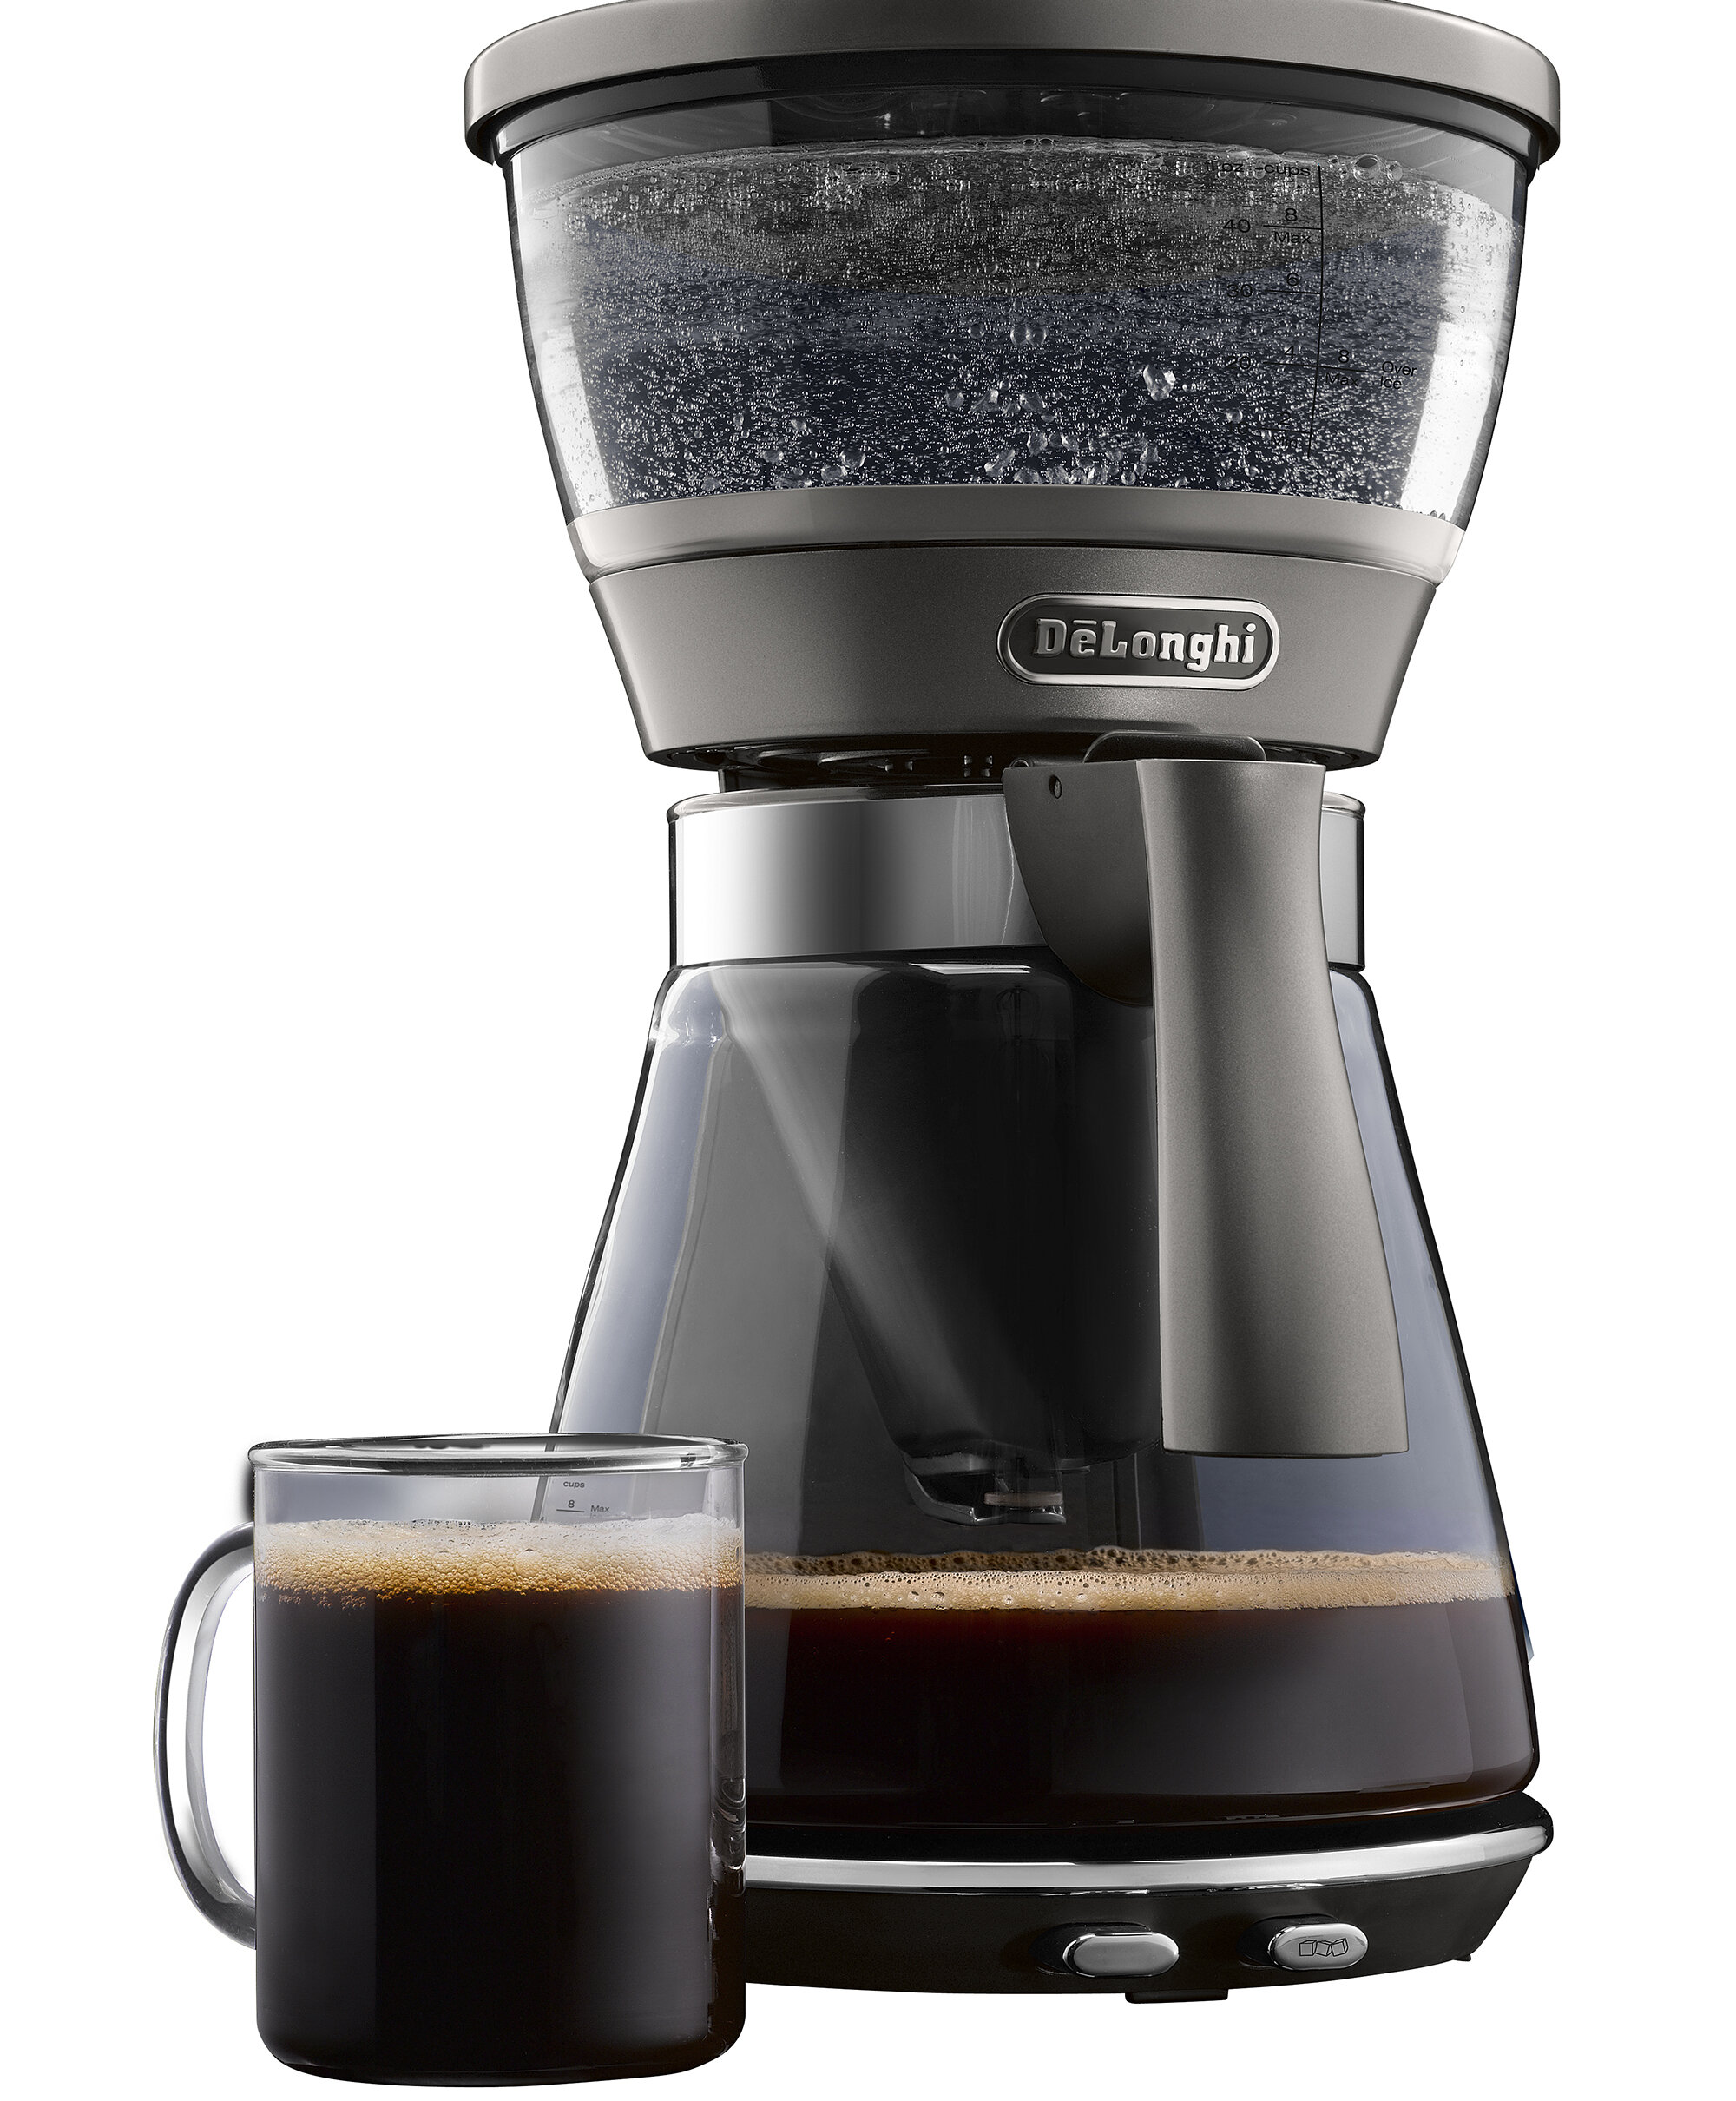 Least Rendezvous Unfavorable DeLonghi 8-Cup Coffee Maker & Reviews | Wayfair